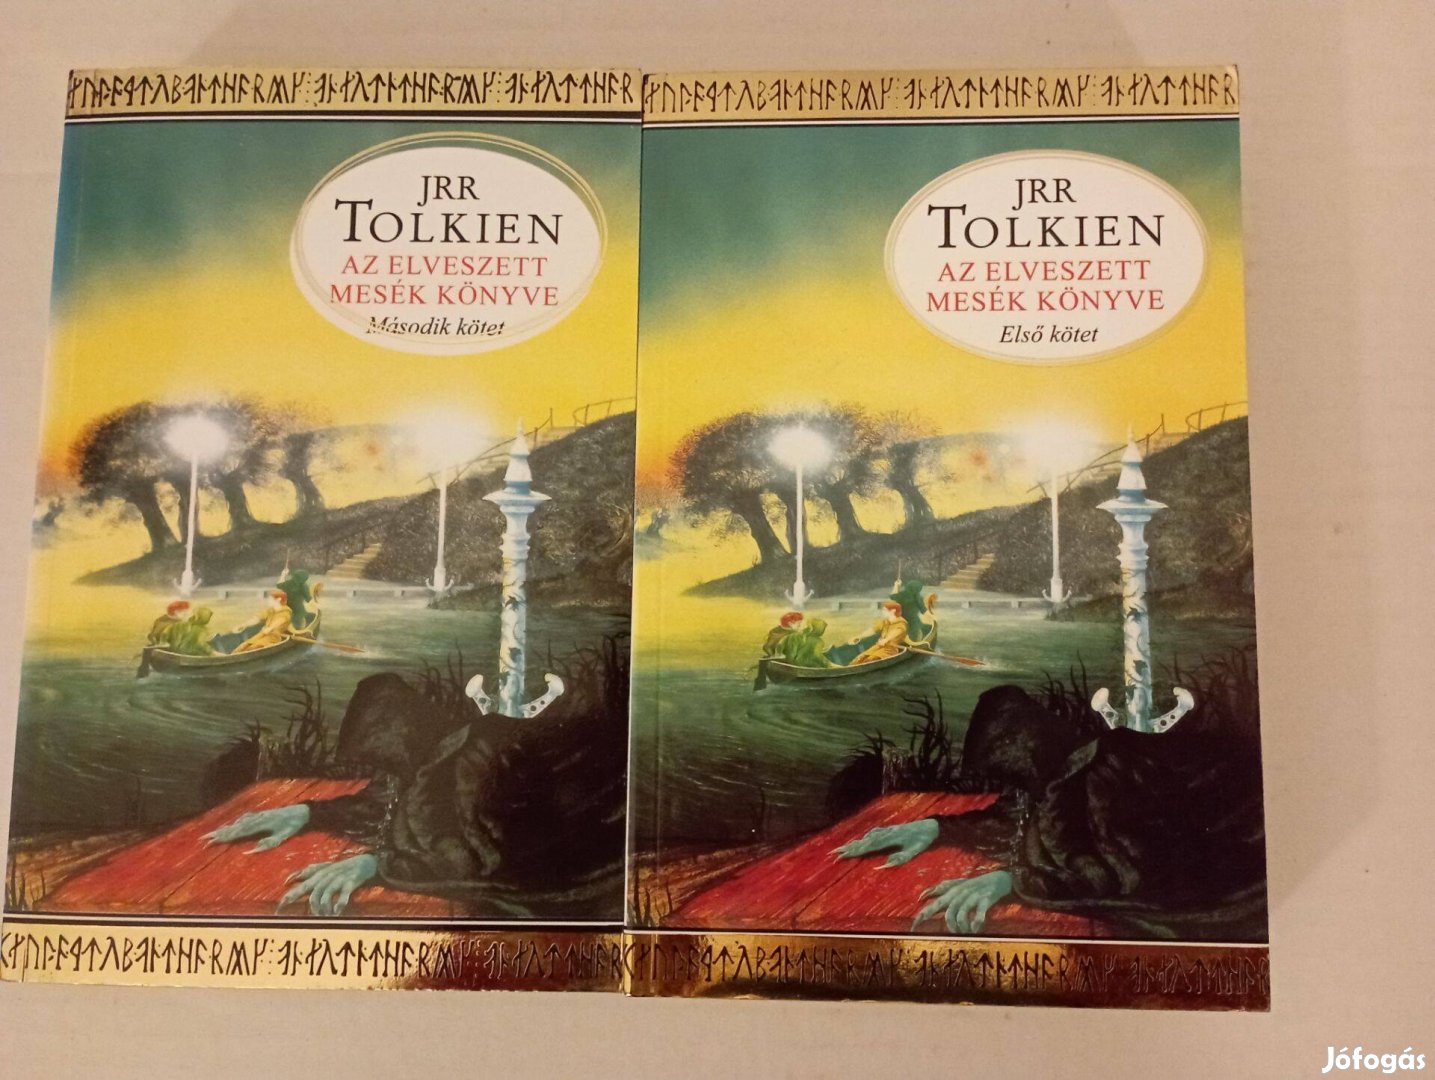 Tolkien Az elveszett mesék könyve